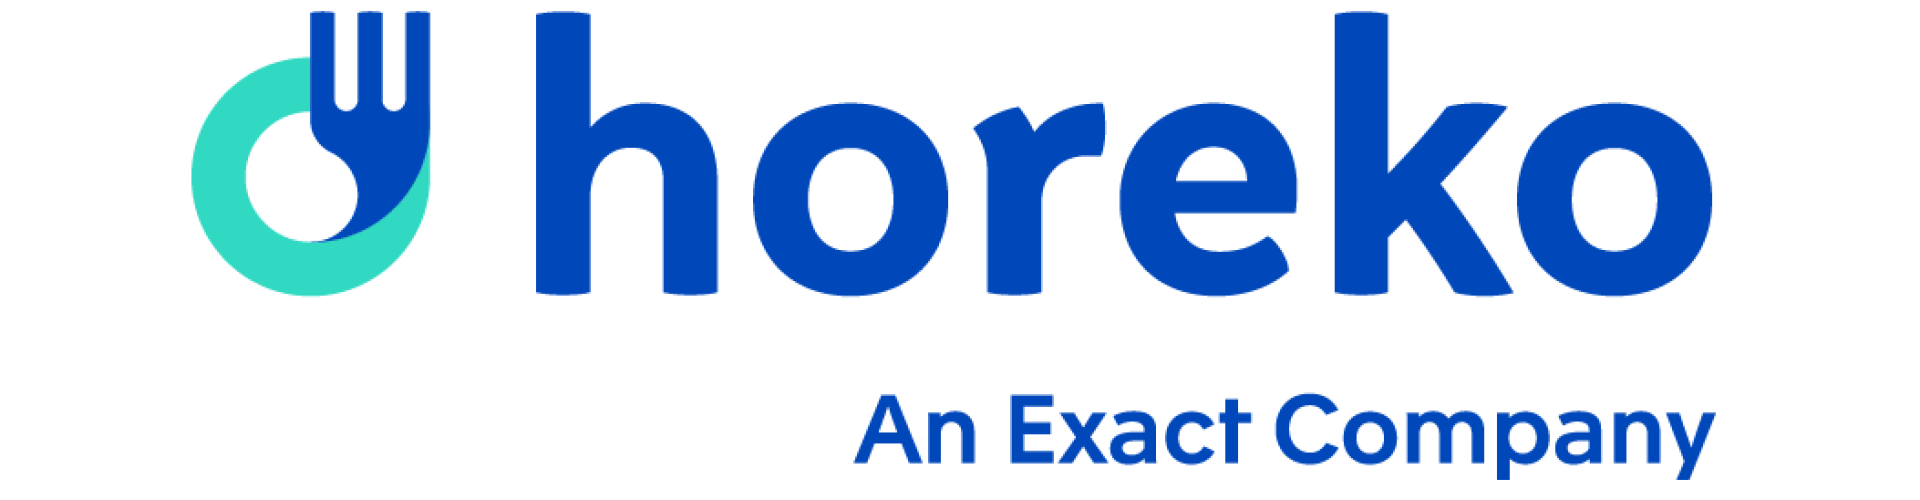 Pizza prof partner Horeko logo